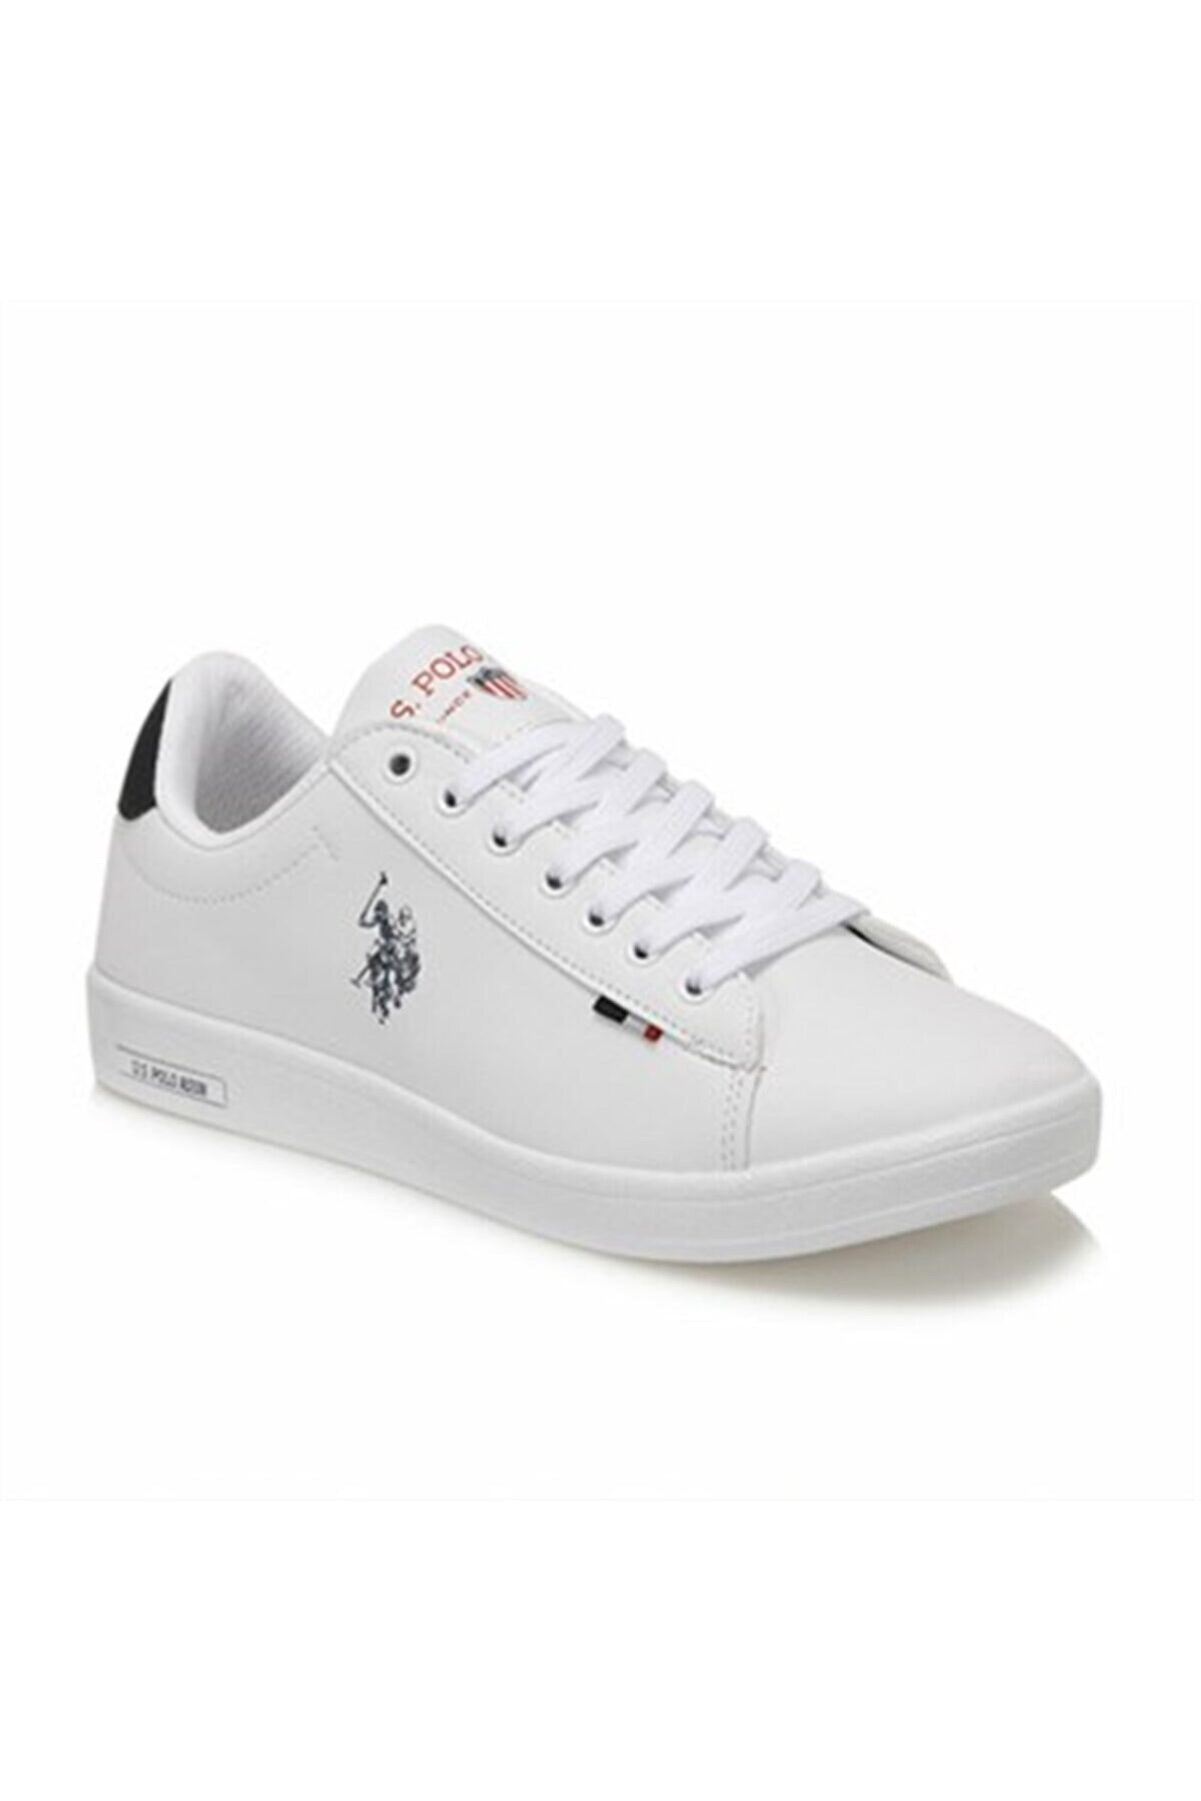 U.S. Polo Assn. FRANCO WMN 1FX Beyaz Kadın Sneaker Ayakkabı 100910292